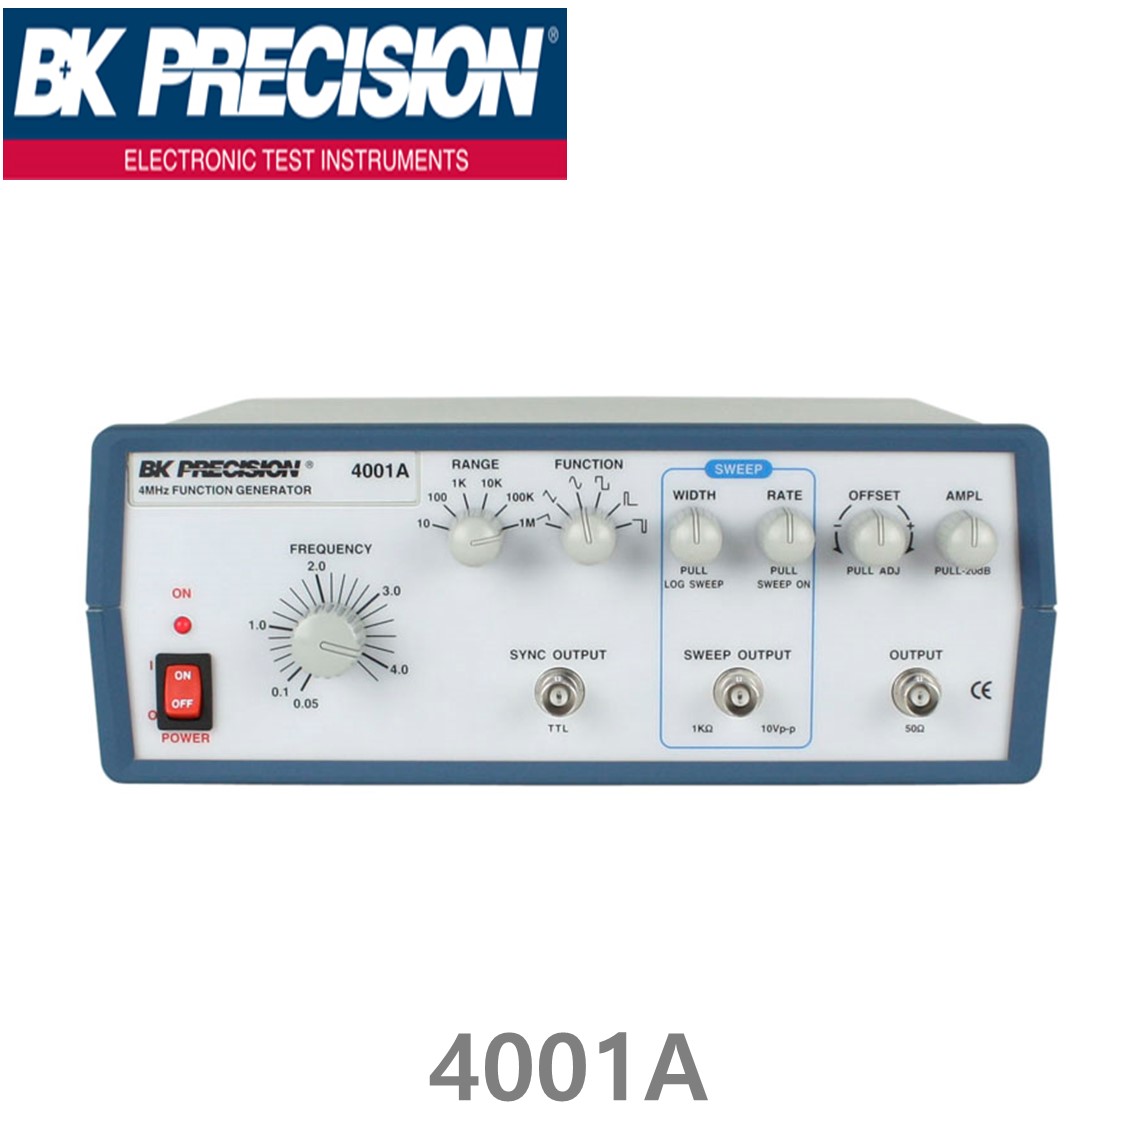 [ BK PRECISION ] BK 4001A, 4MHz, Function Generator, 펑션제너레이터, B&K 4001A